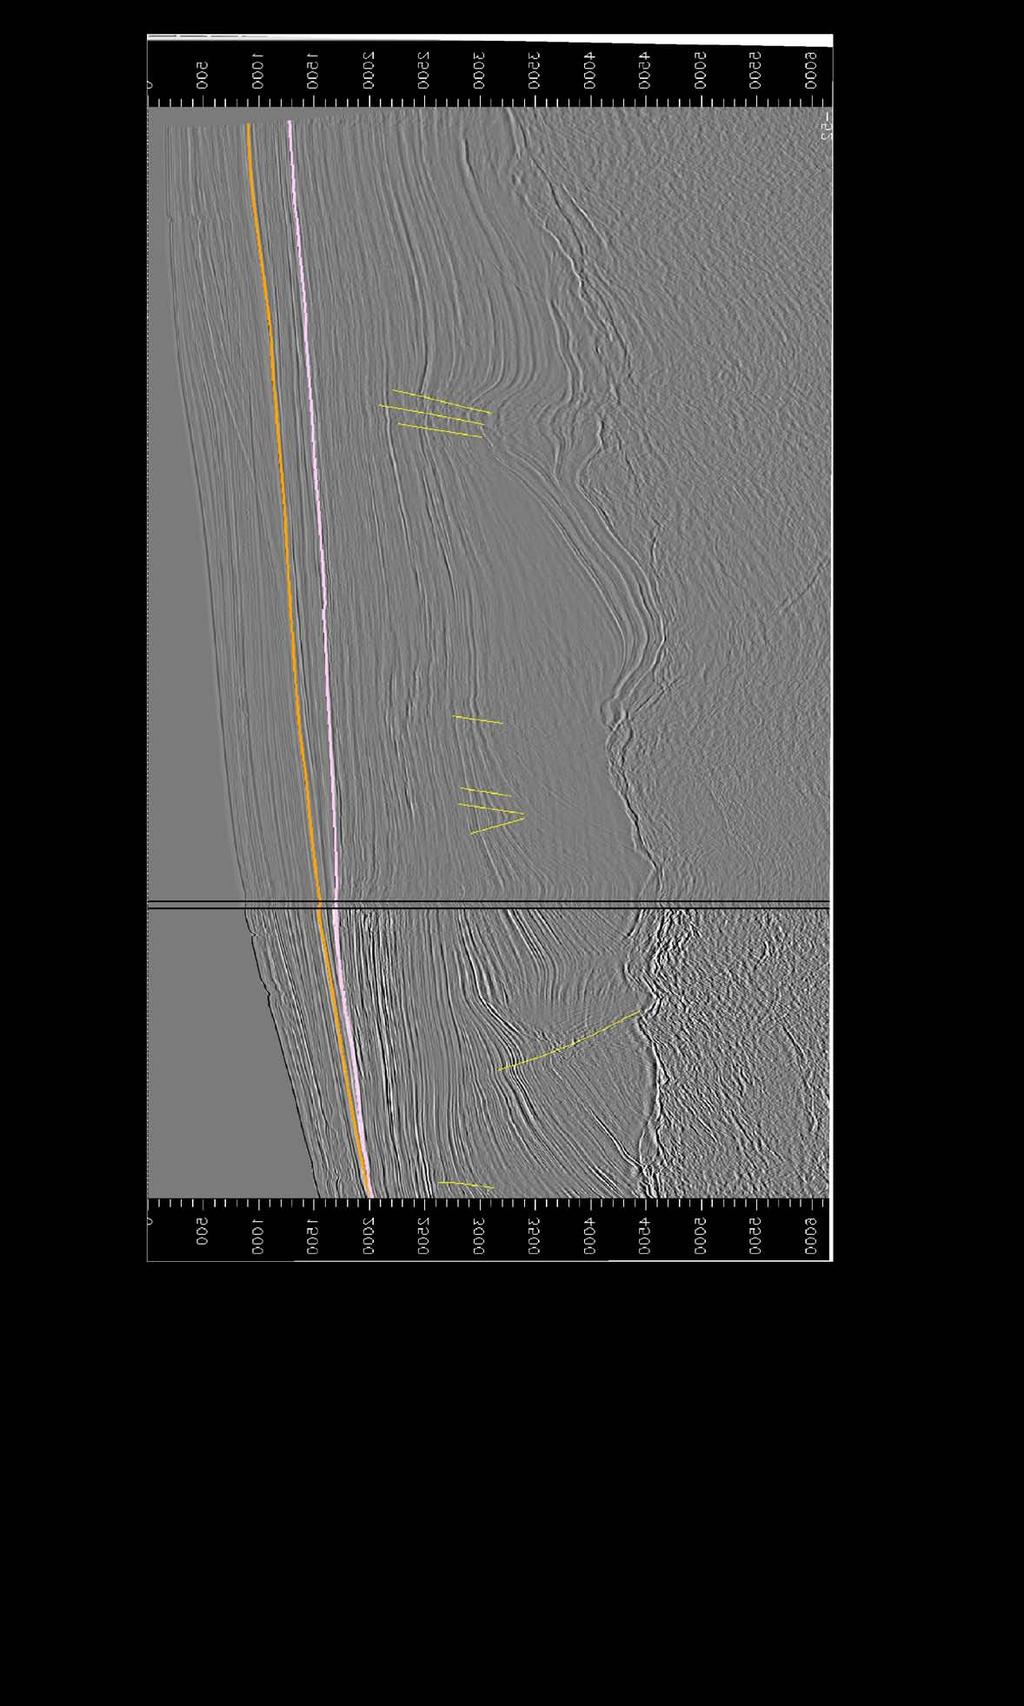 TWT NW SE H7 H6 5049m 4700m H5 H4 H3 H2 H1 Figura 4.27: Linhas sísmicas 231-0649 e 248-0017, em tempo (TWT).